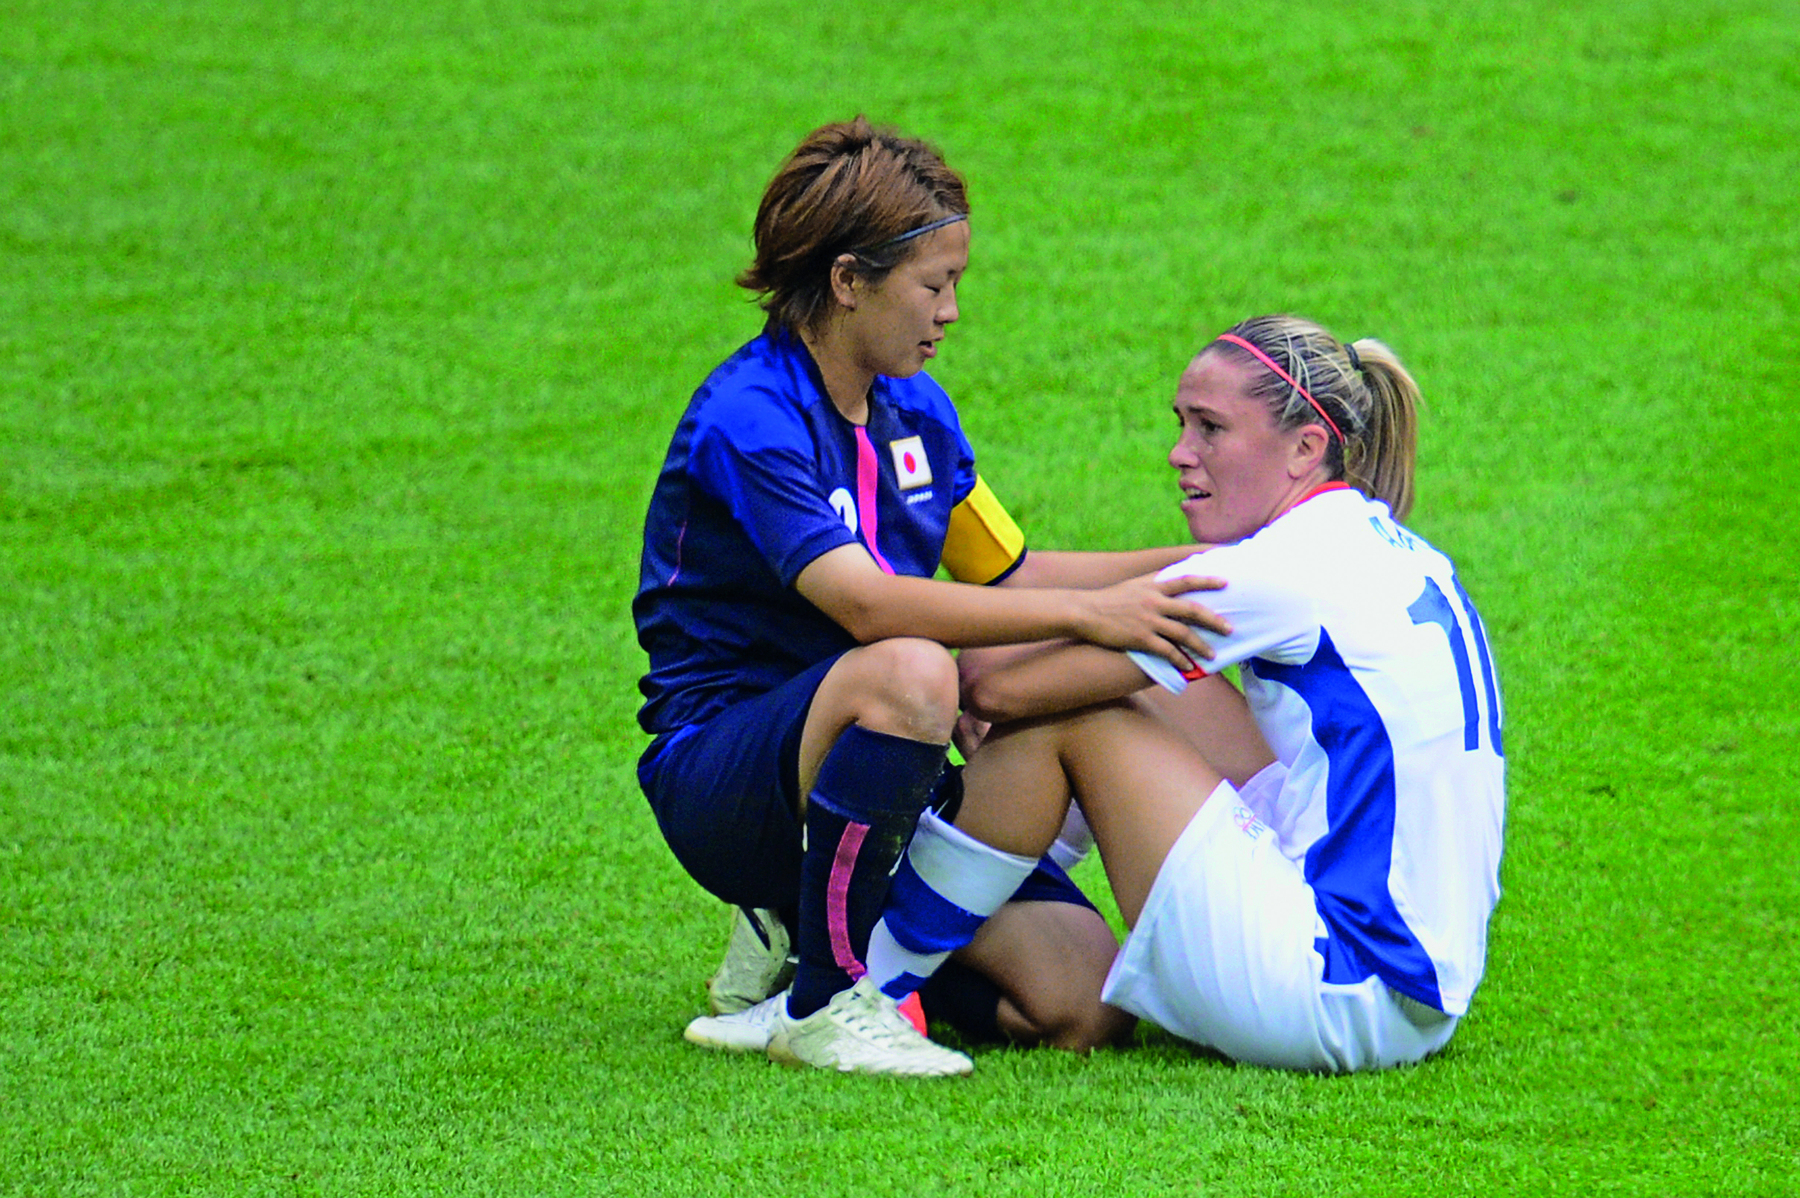 Fotografia. Duas mulheres, uma usando uniforme azul; outra usando uniforme branco, estão sentadas em um gramado de campo de futebol. A mulher de uniforme azul está de frente para a mulher de uniforme branco e com as mãos sobre os seus braços.